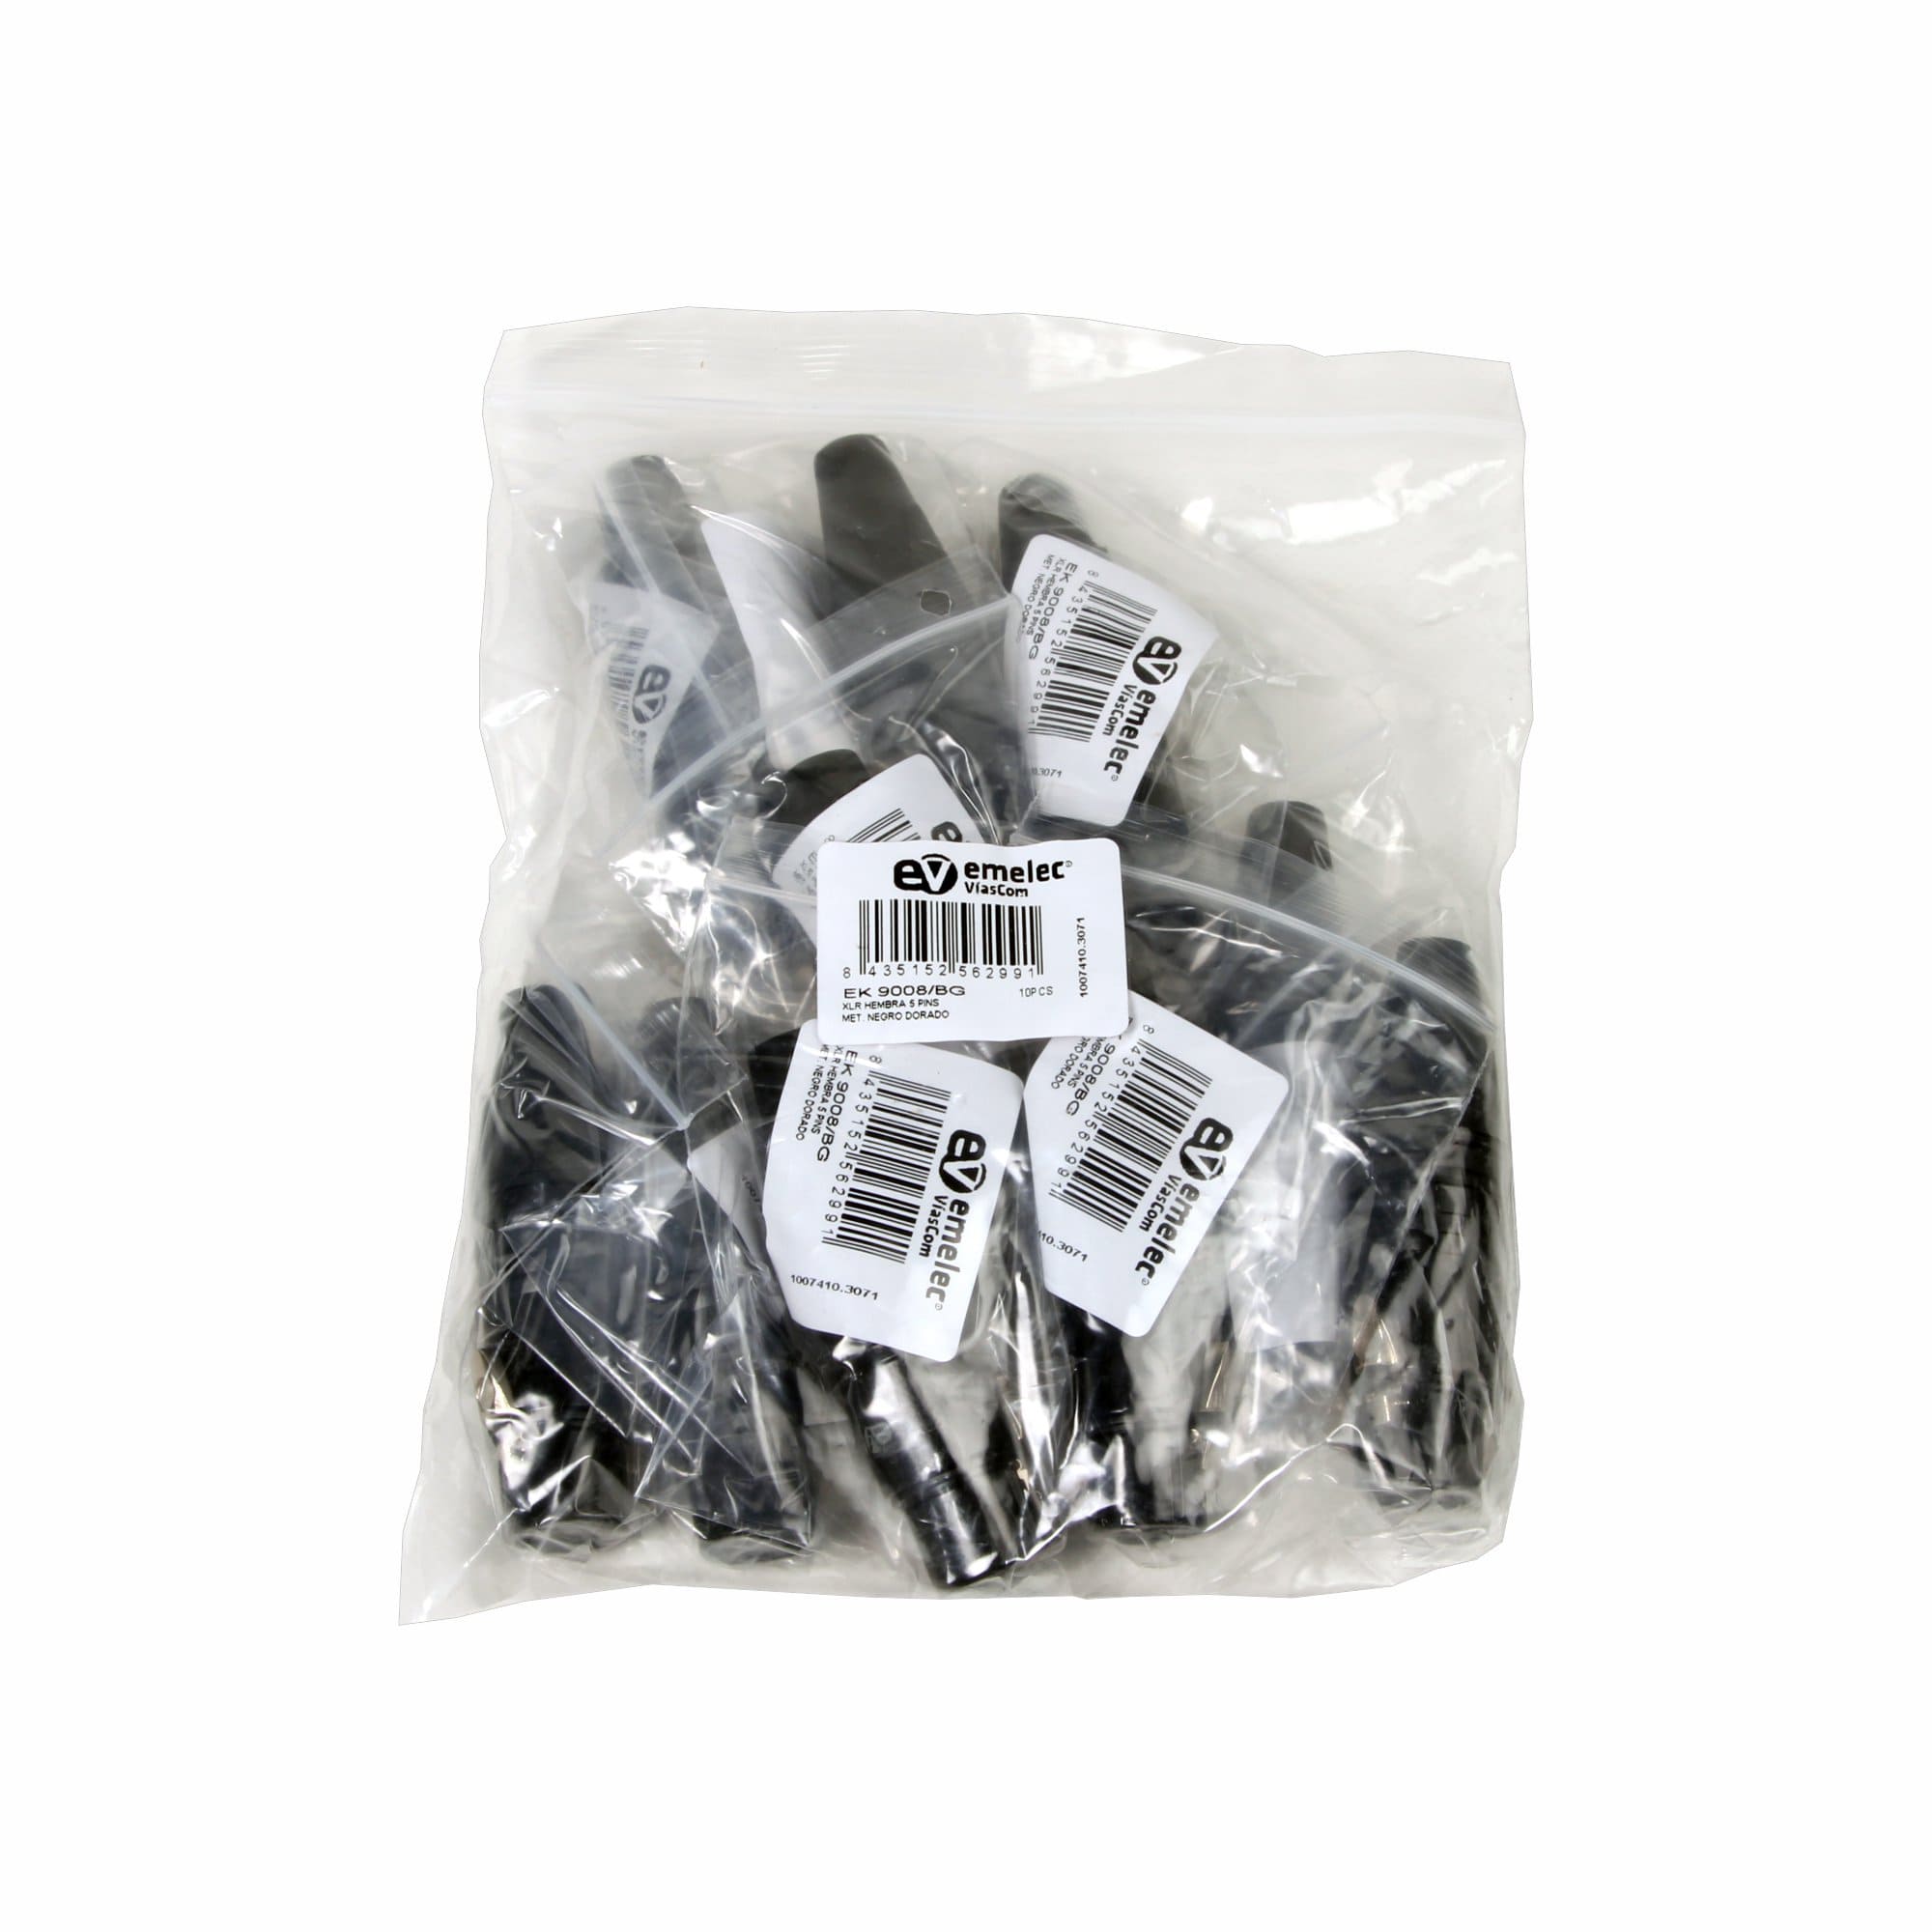 Saco de plástico com 10 conectores XLR pretos de 5 pinos fêmea da Emelec ViaCom